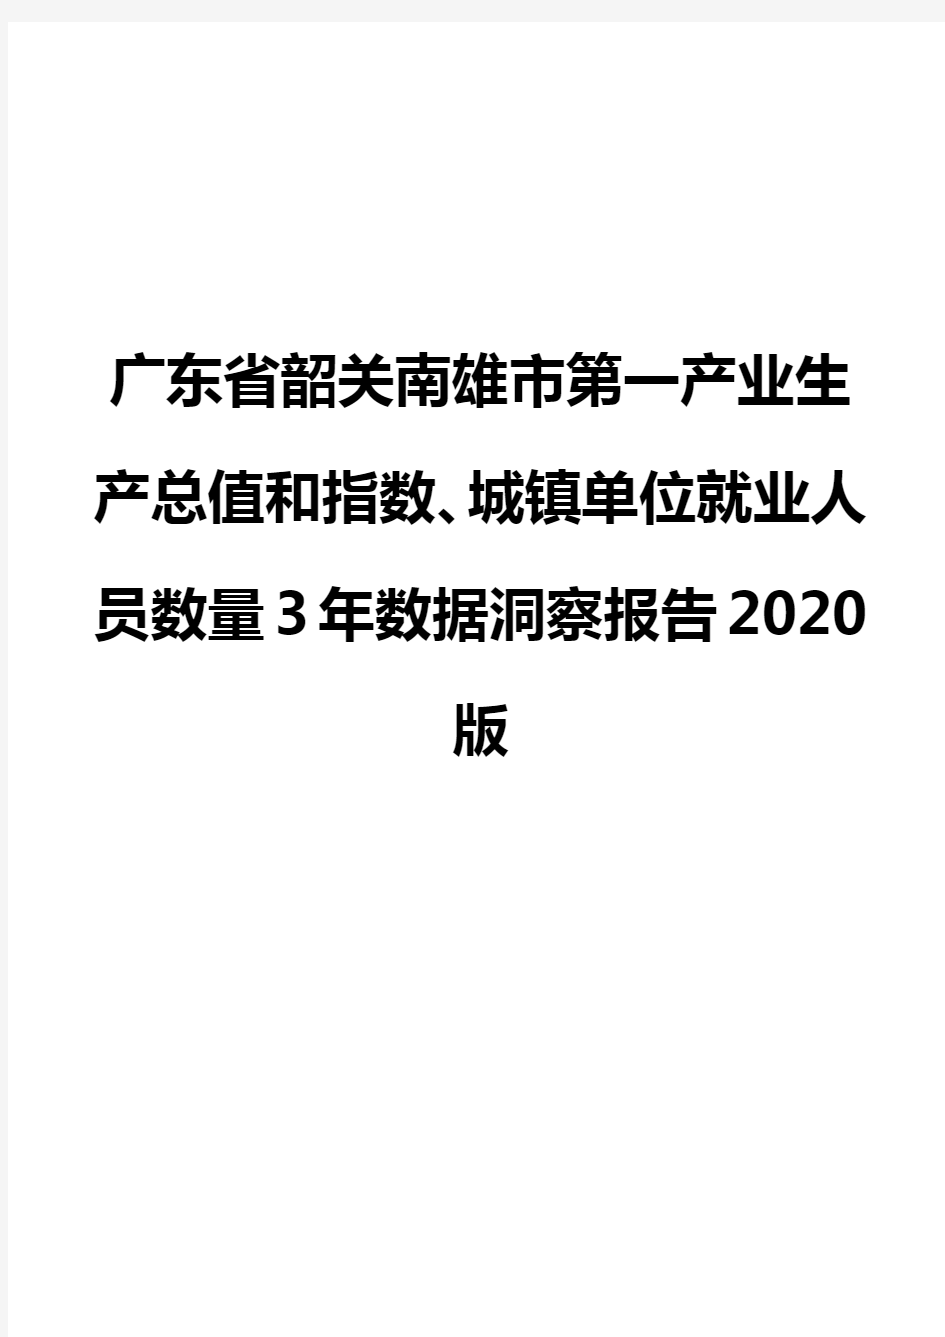 广东省韶关南雄市第一产业生产总值和指数、城镇单位就业人员数量3年数据洞察报告2020版